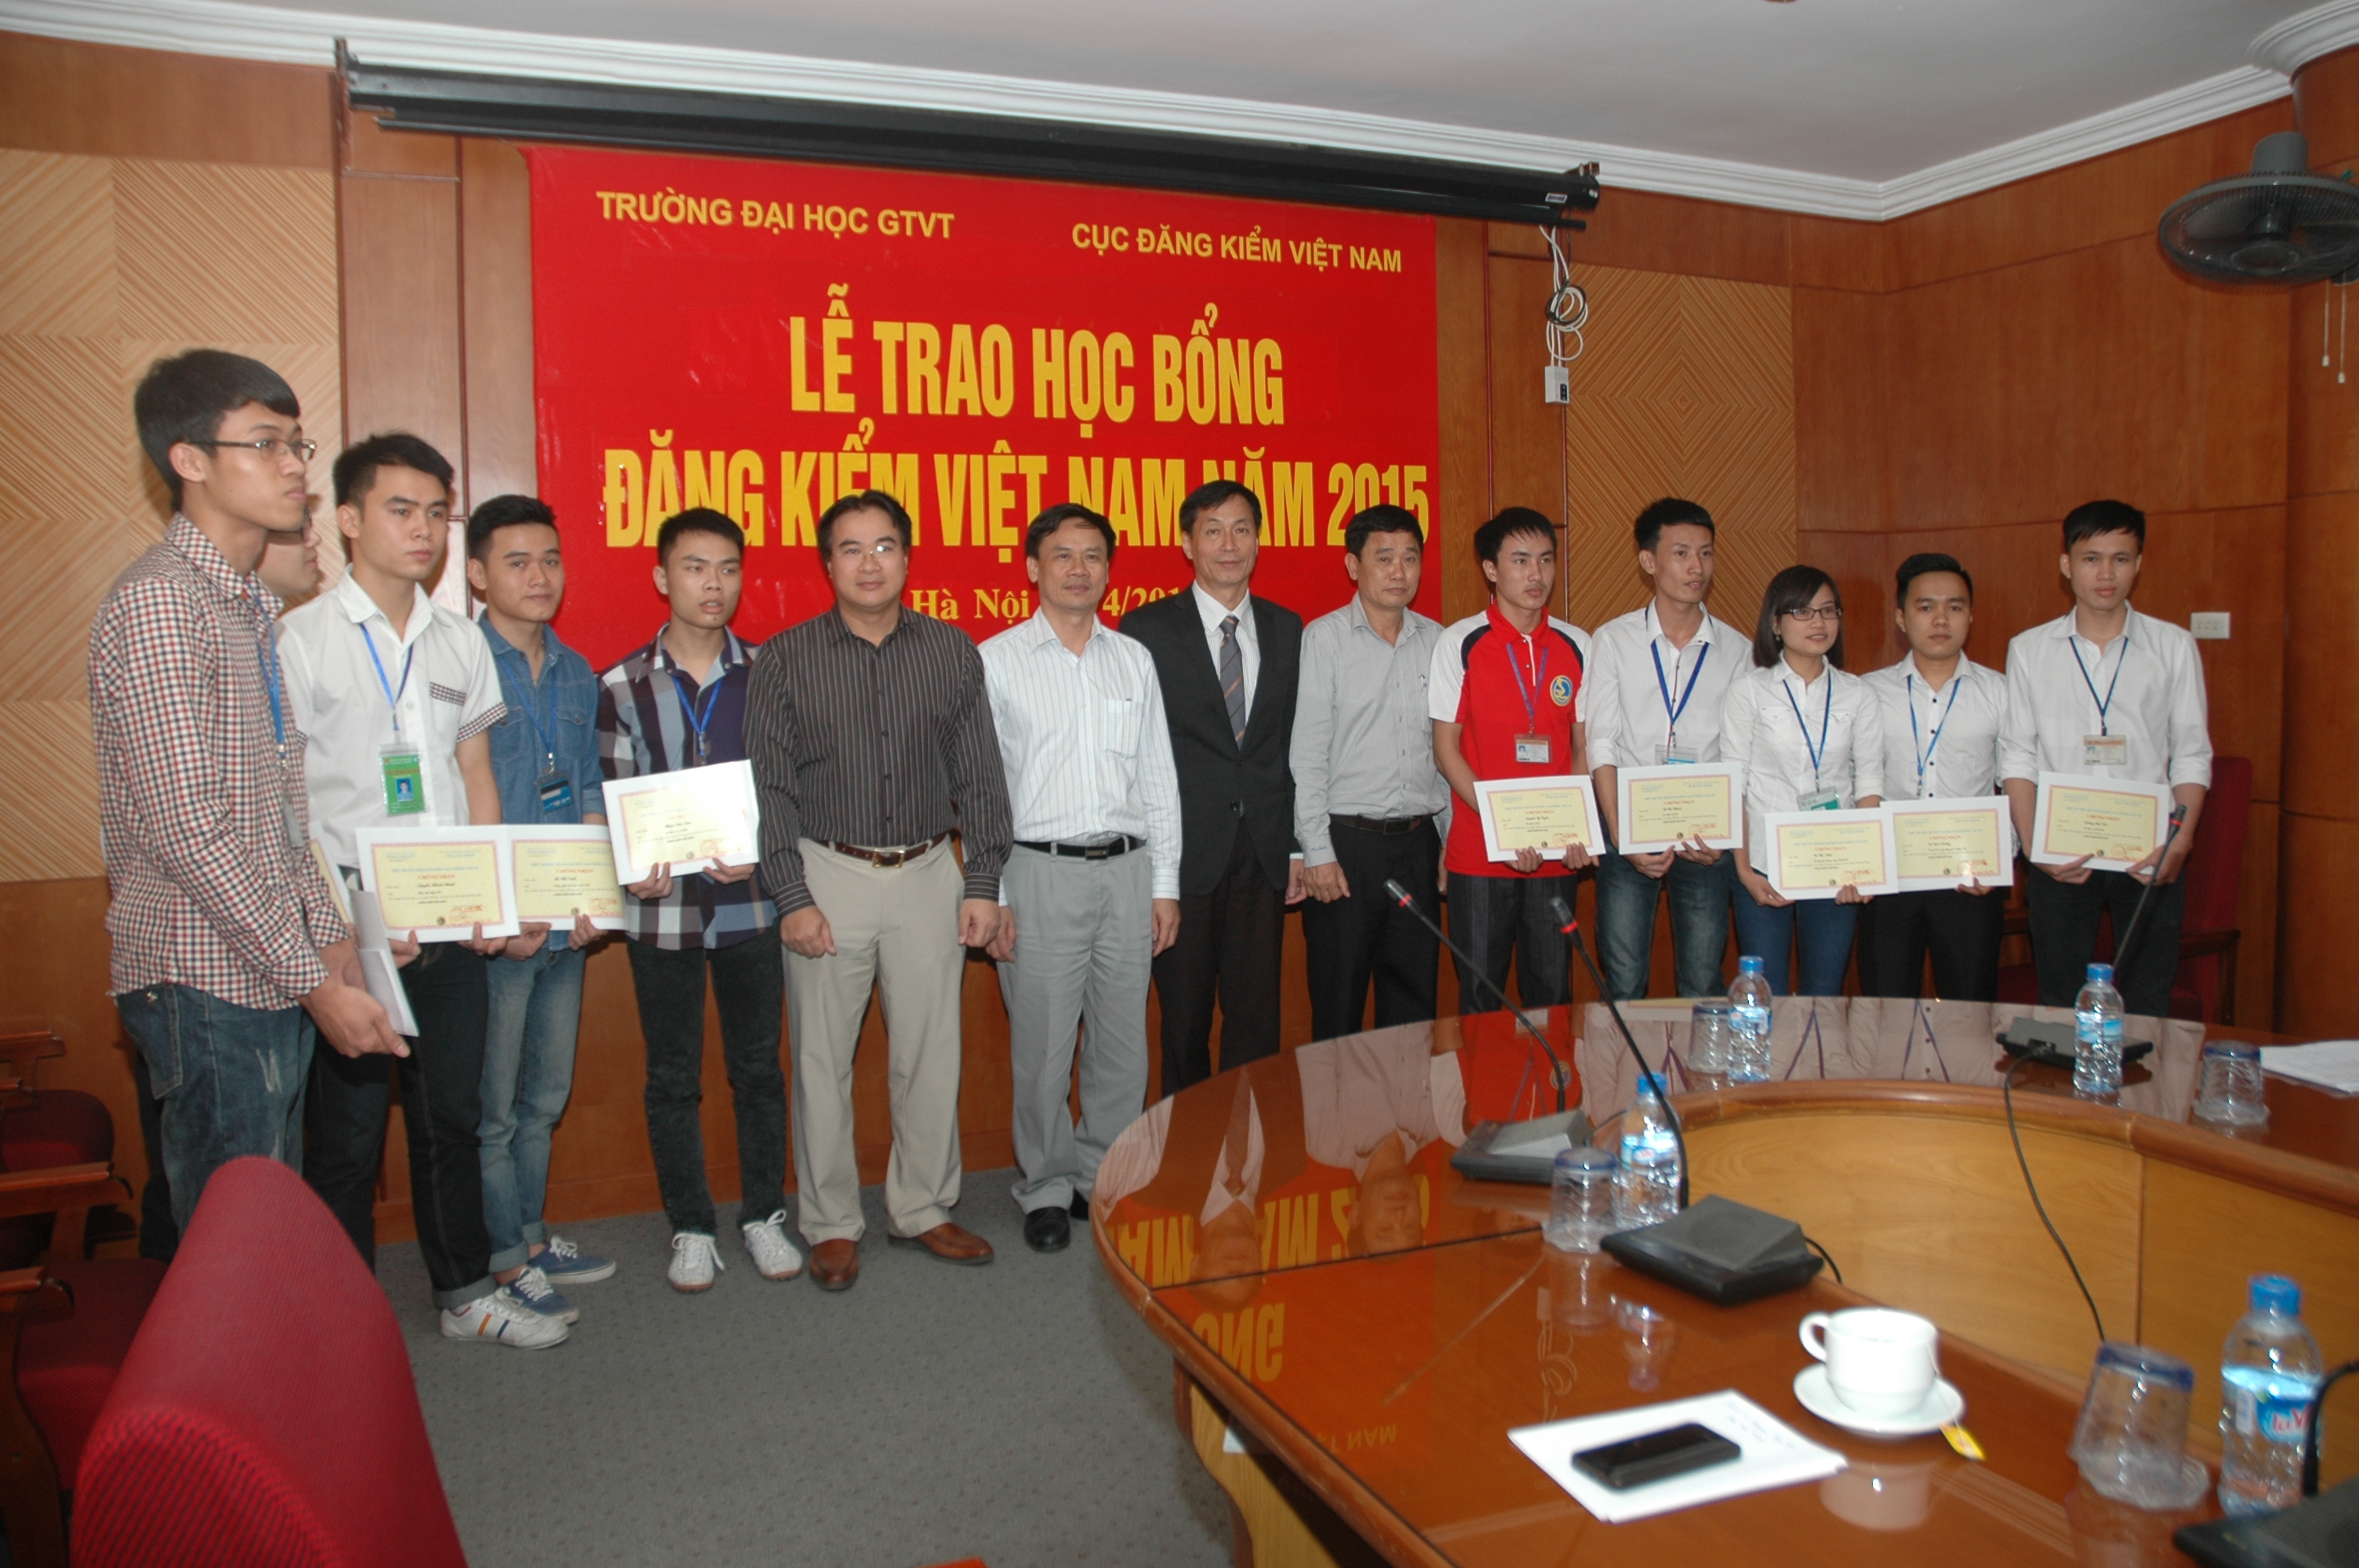 Lễ trao học bổng Đăng kiểm Việt Nam